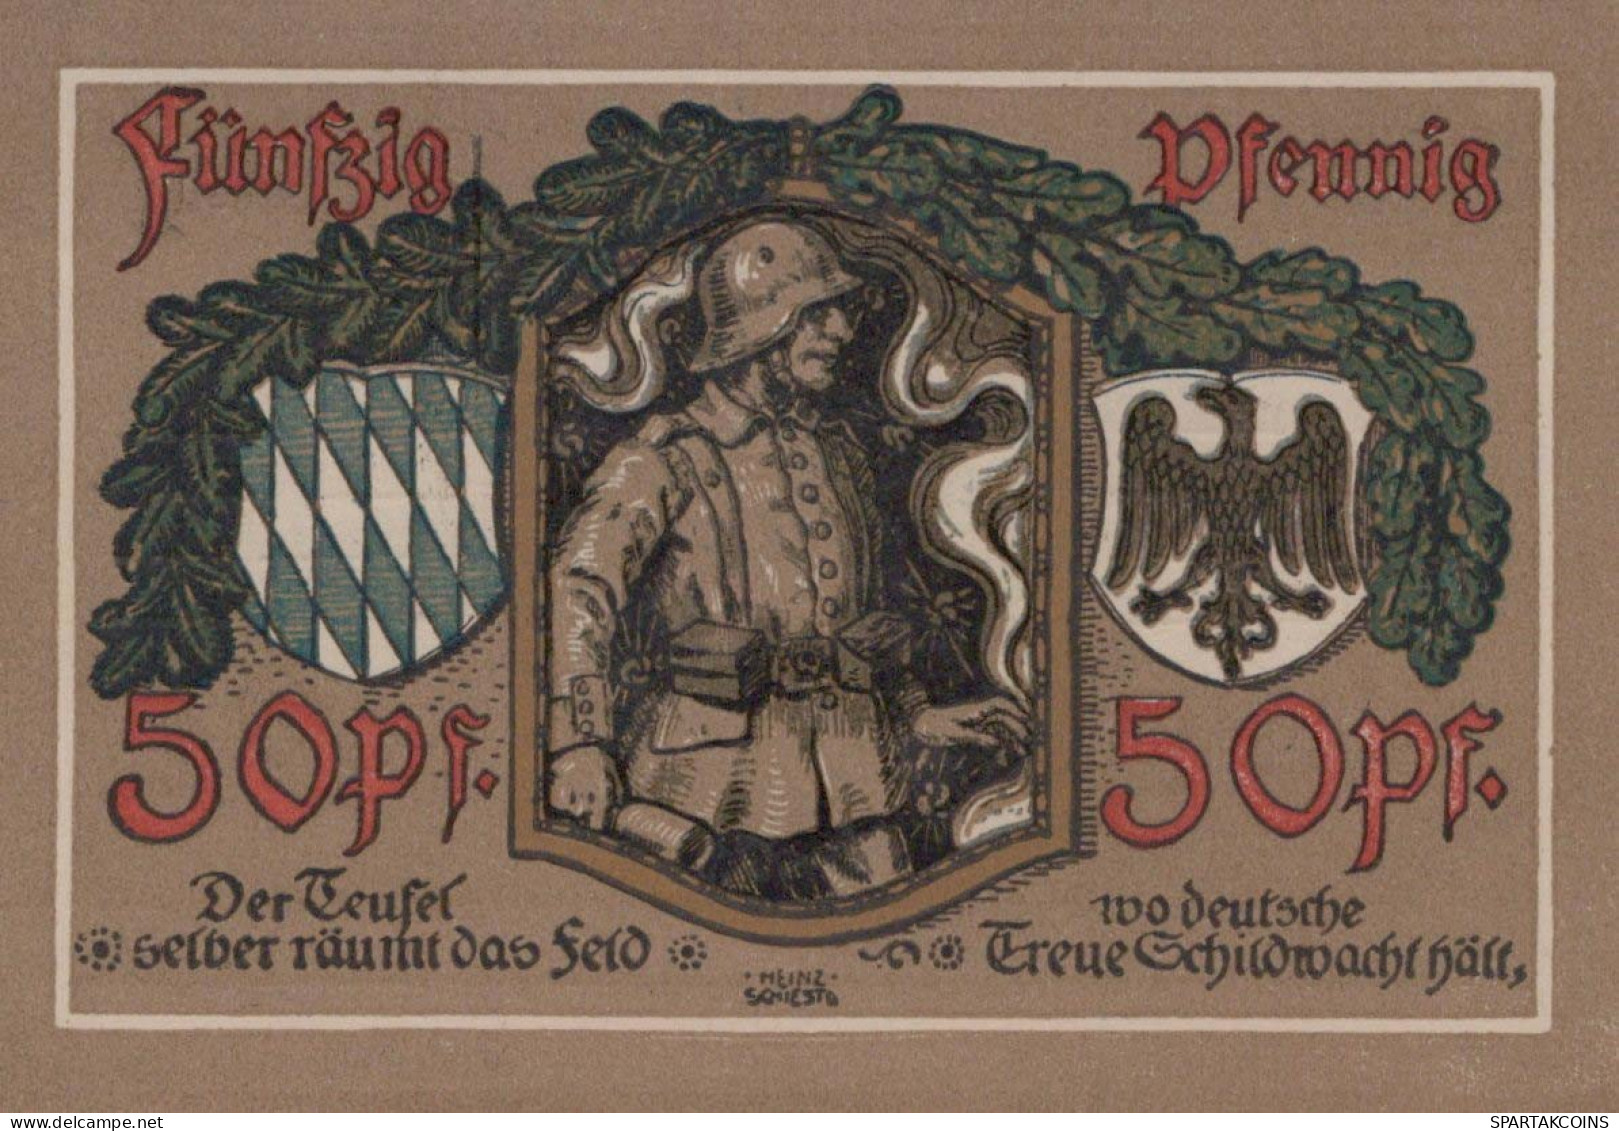 50 PFENNIG 1918 Stadt LINDENBERG IM ALLGÄU Bavaria UNC DEUTSCHLAND #PH246 - [11] Local Banknote Issues